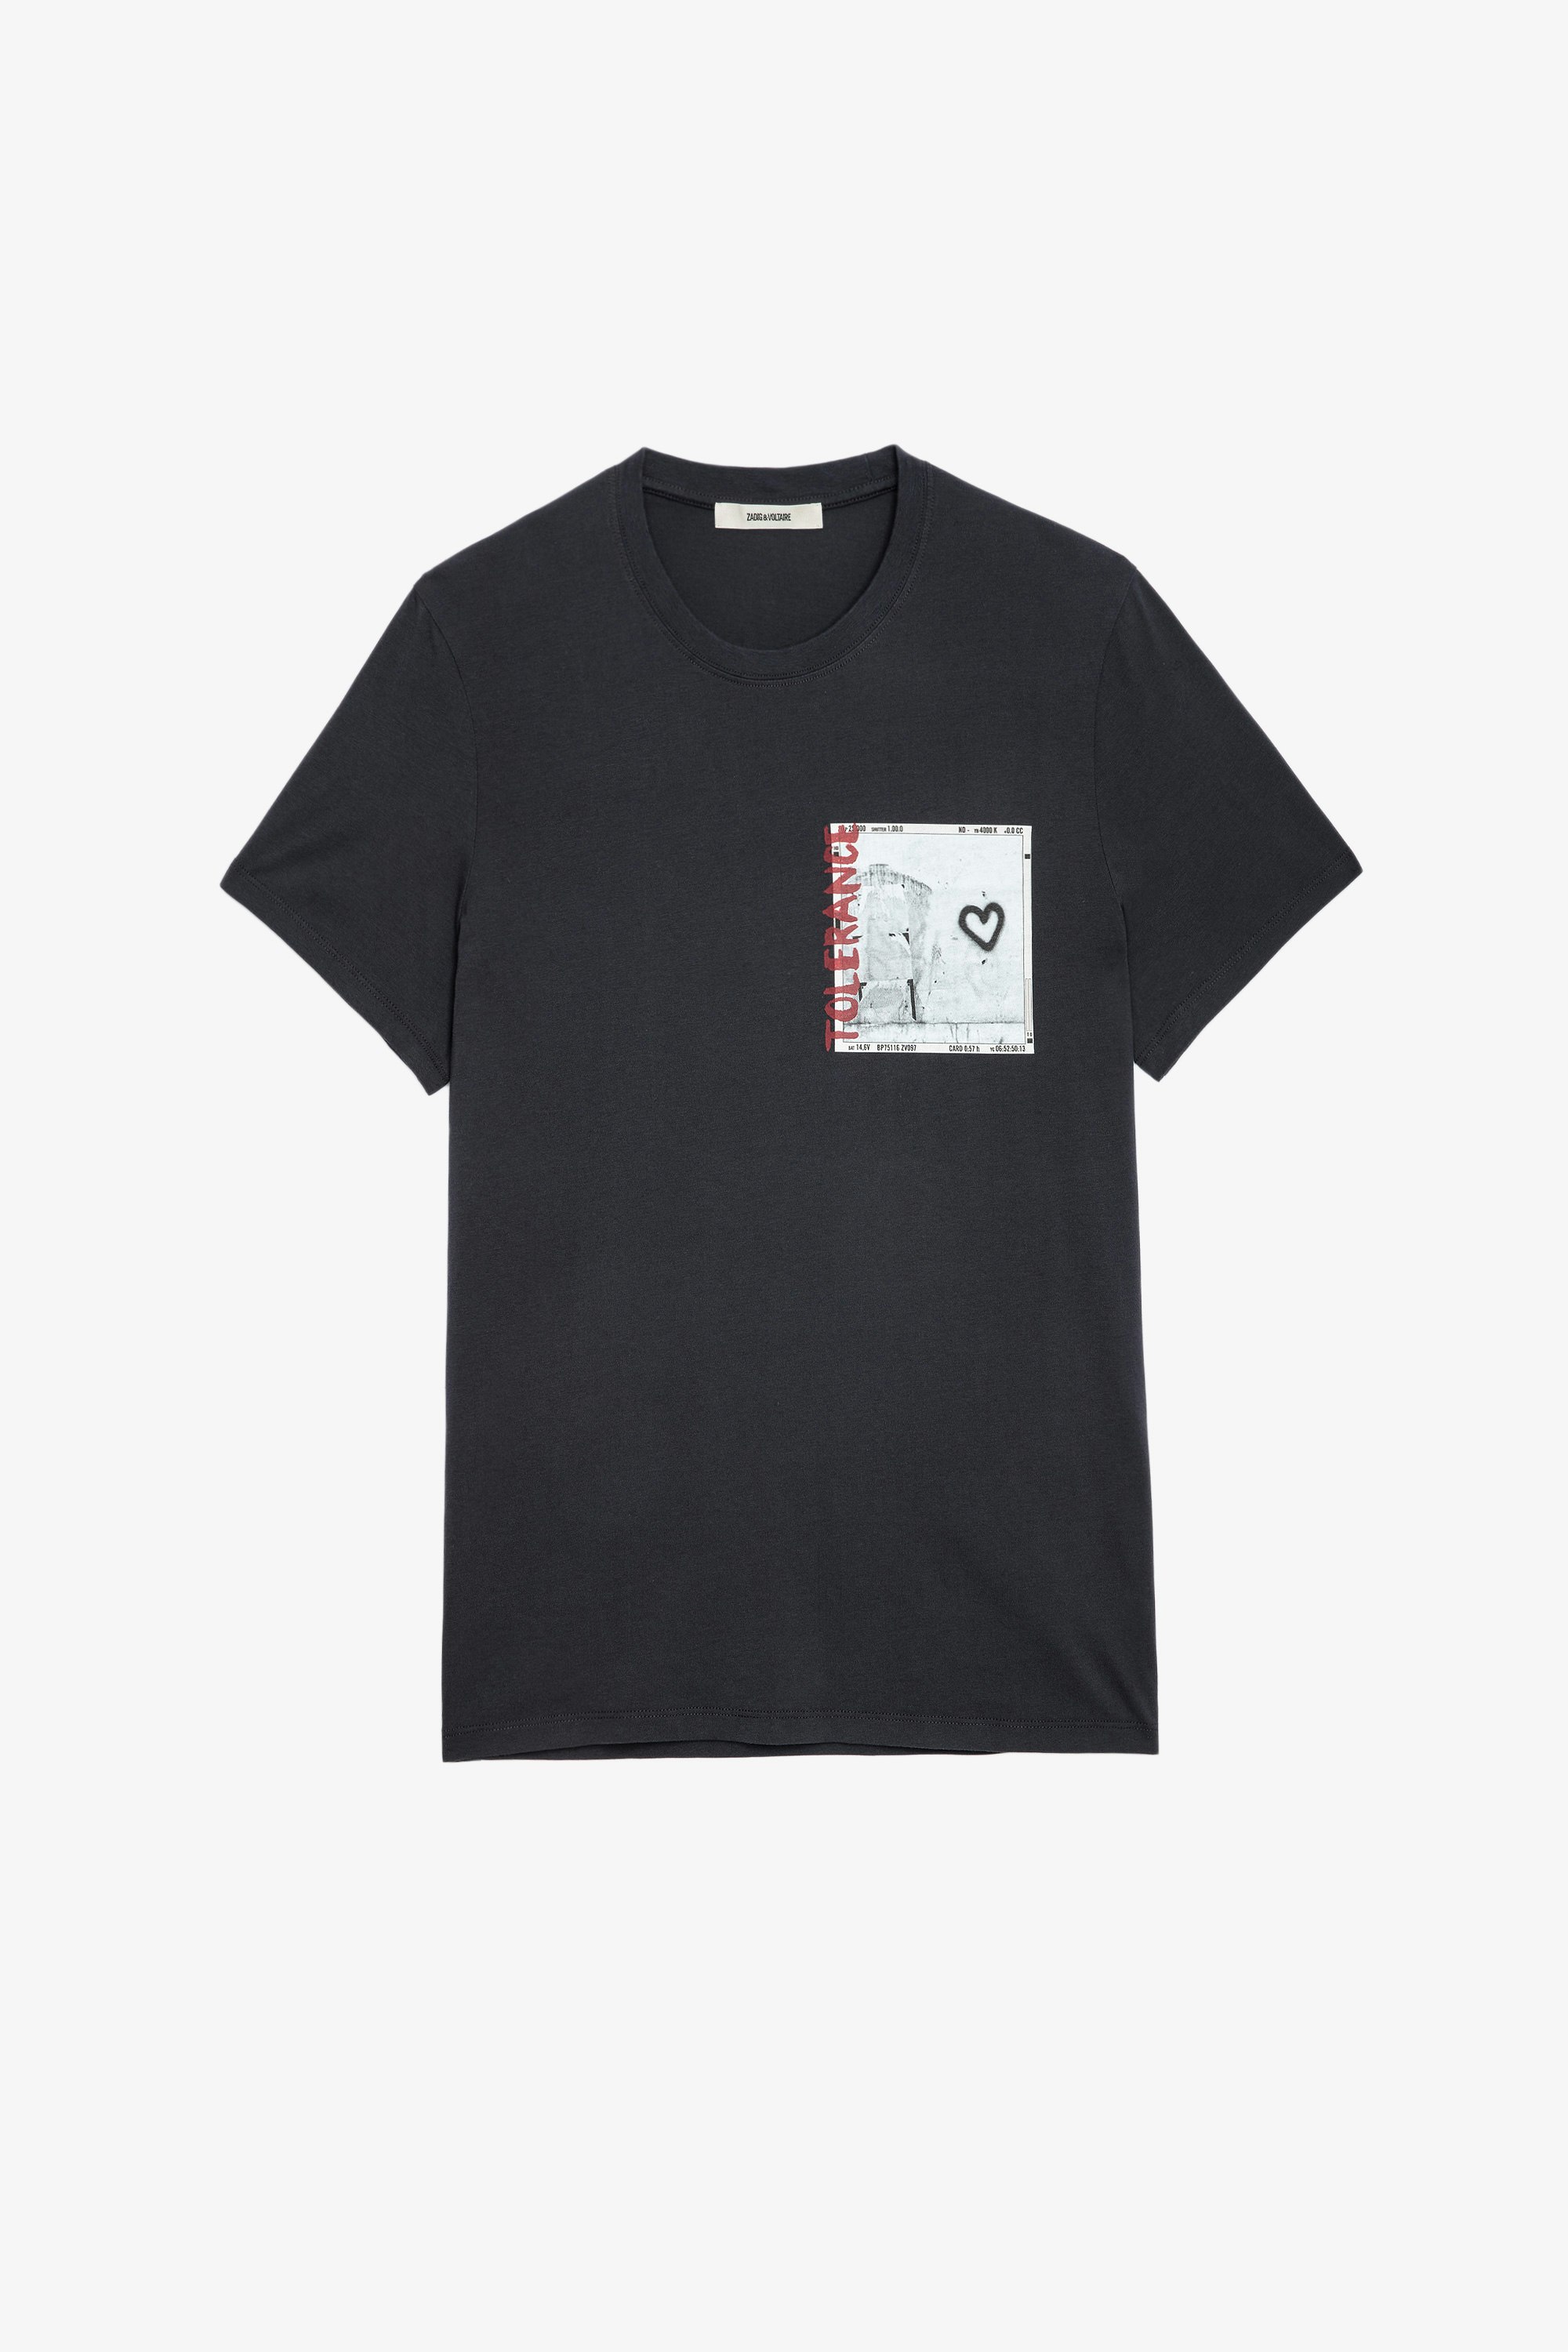 T-shirt Ted Photoprint T-shirt en coton gris anthracite à imprimé photoprint homme